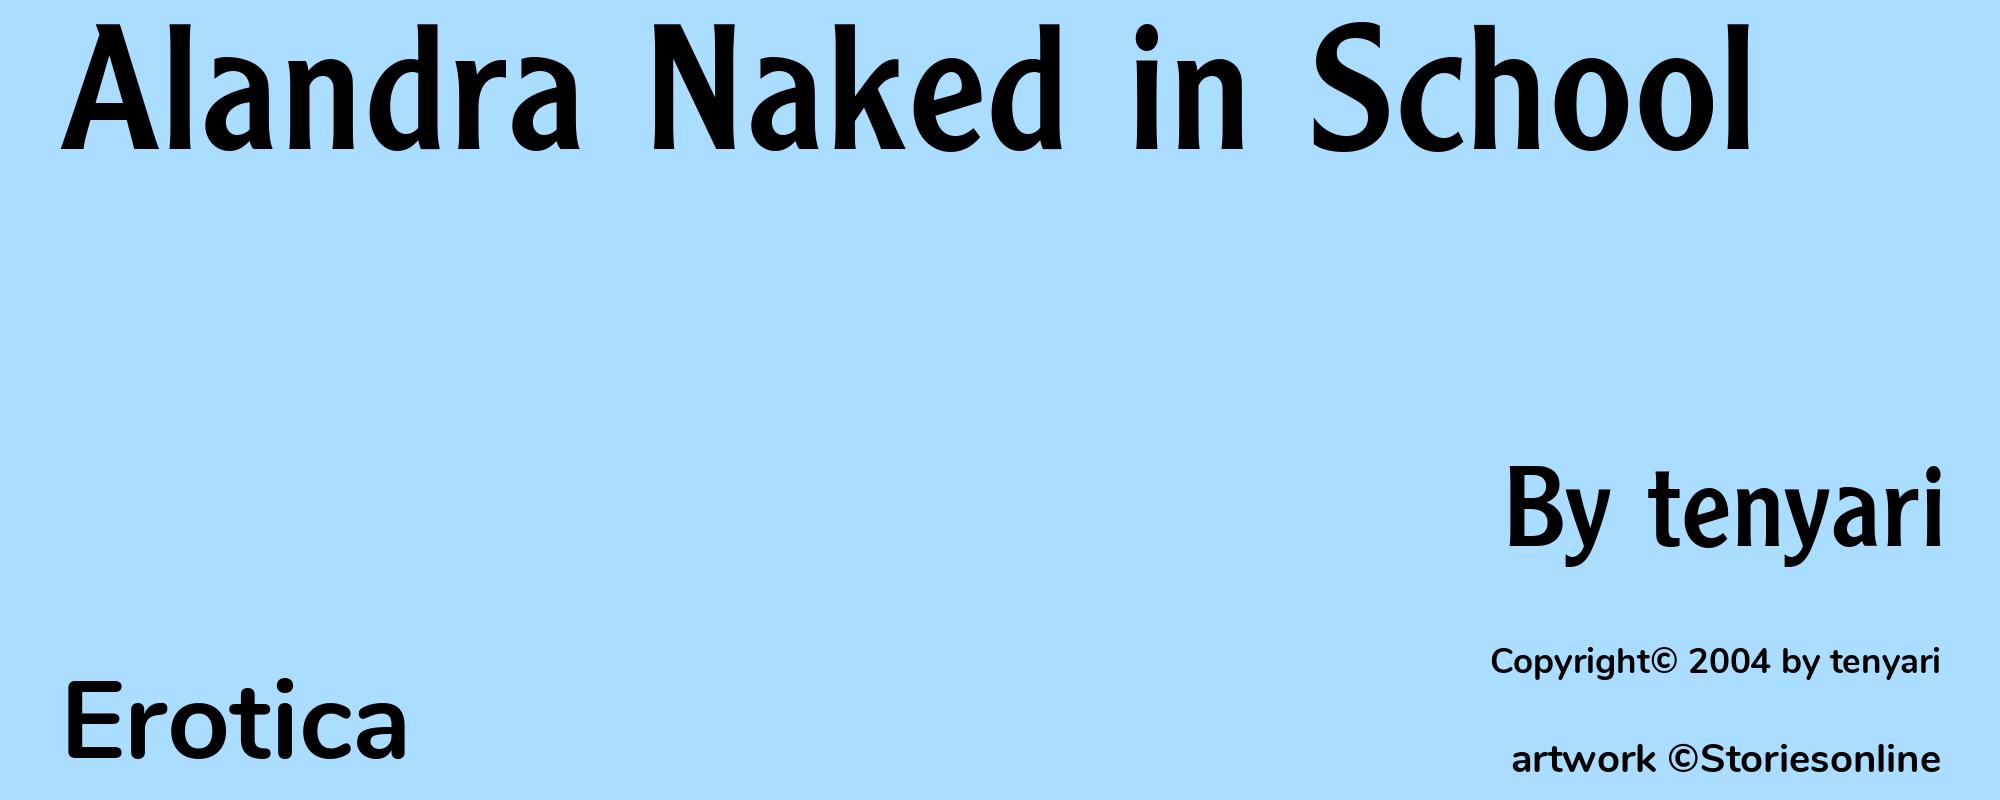 Alandra Naked in School - Cover